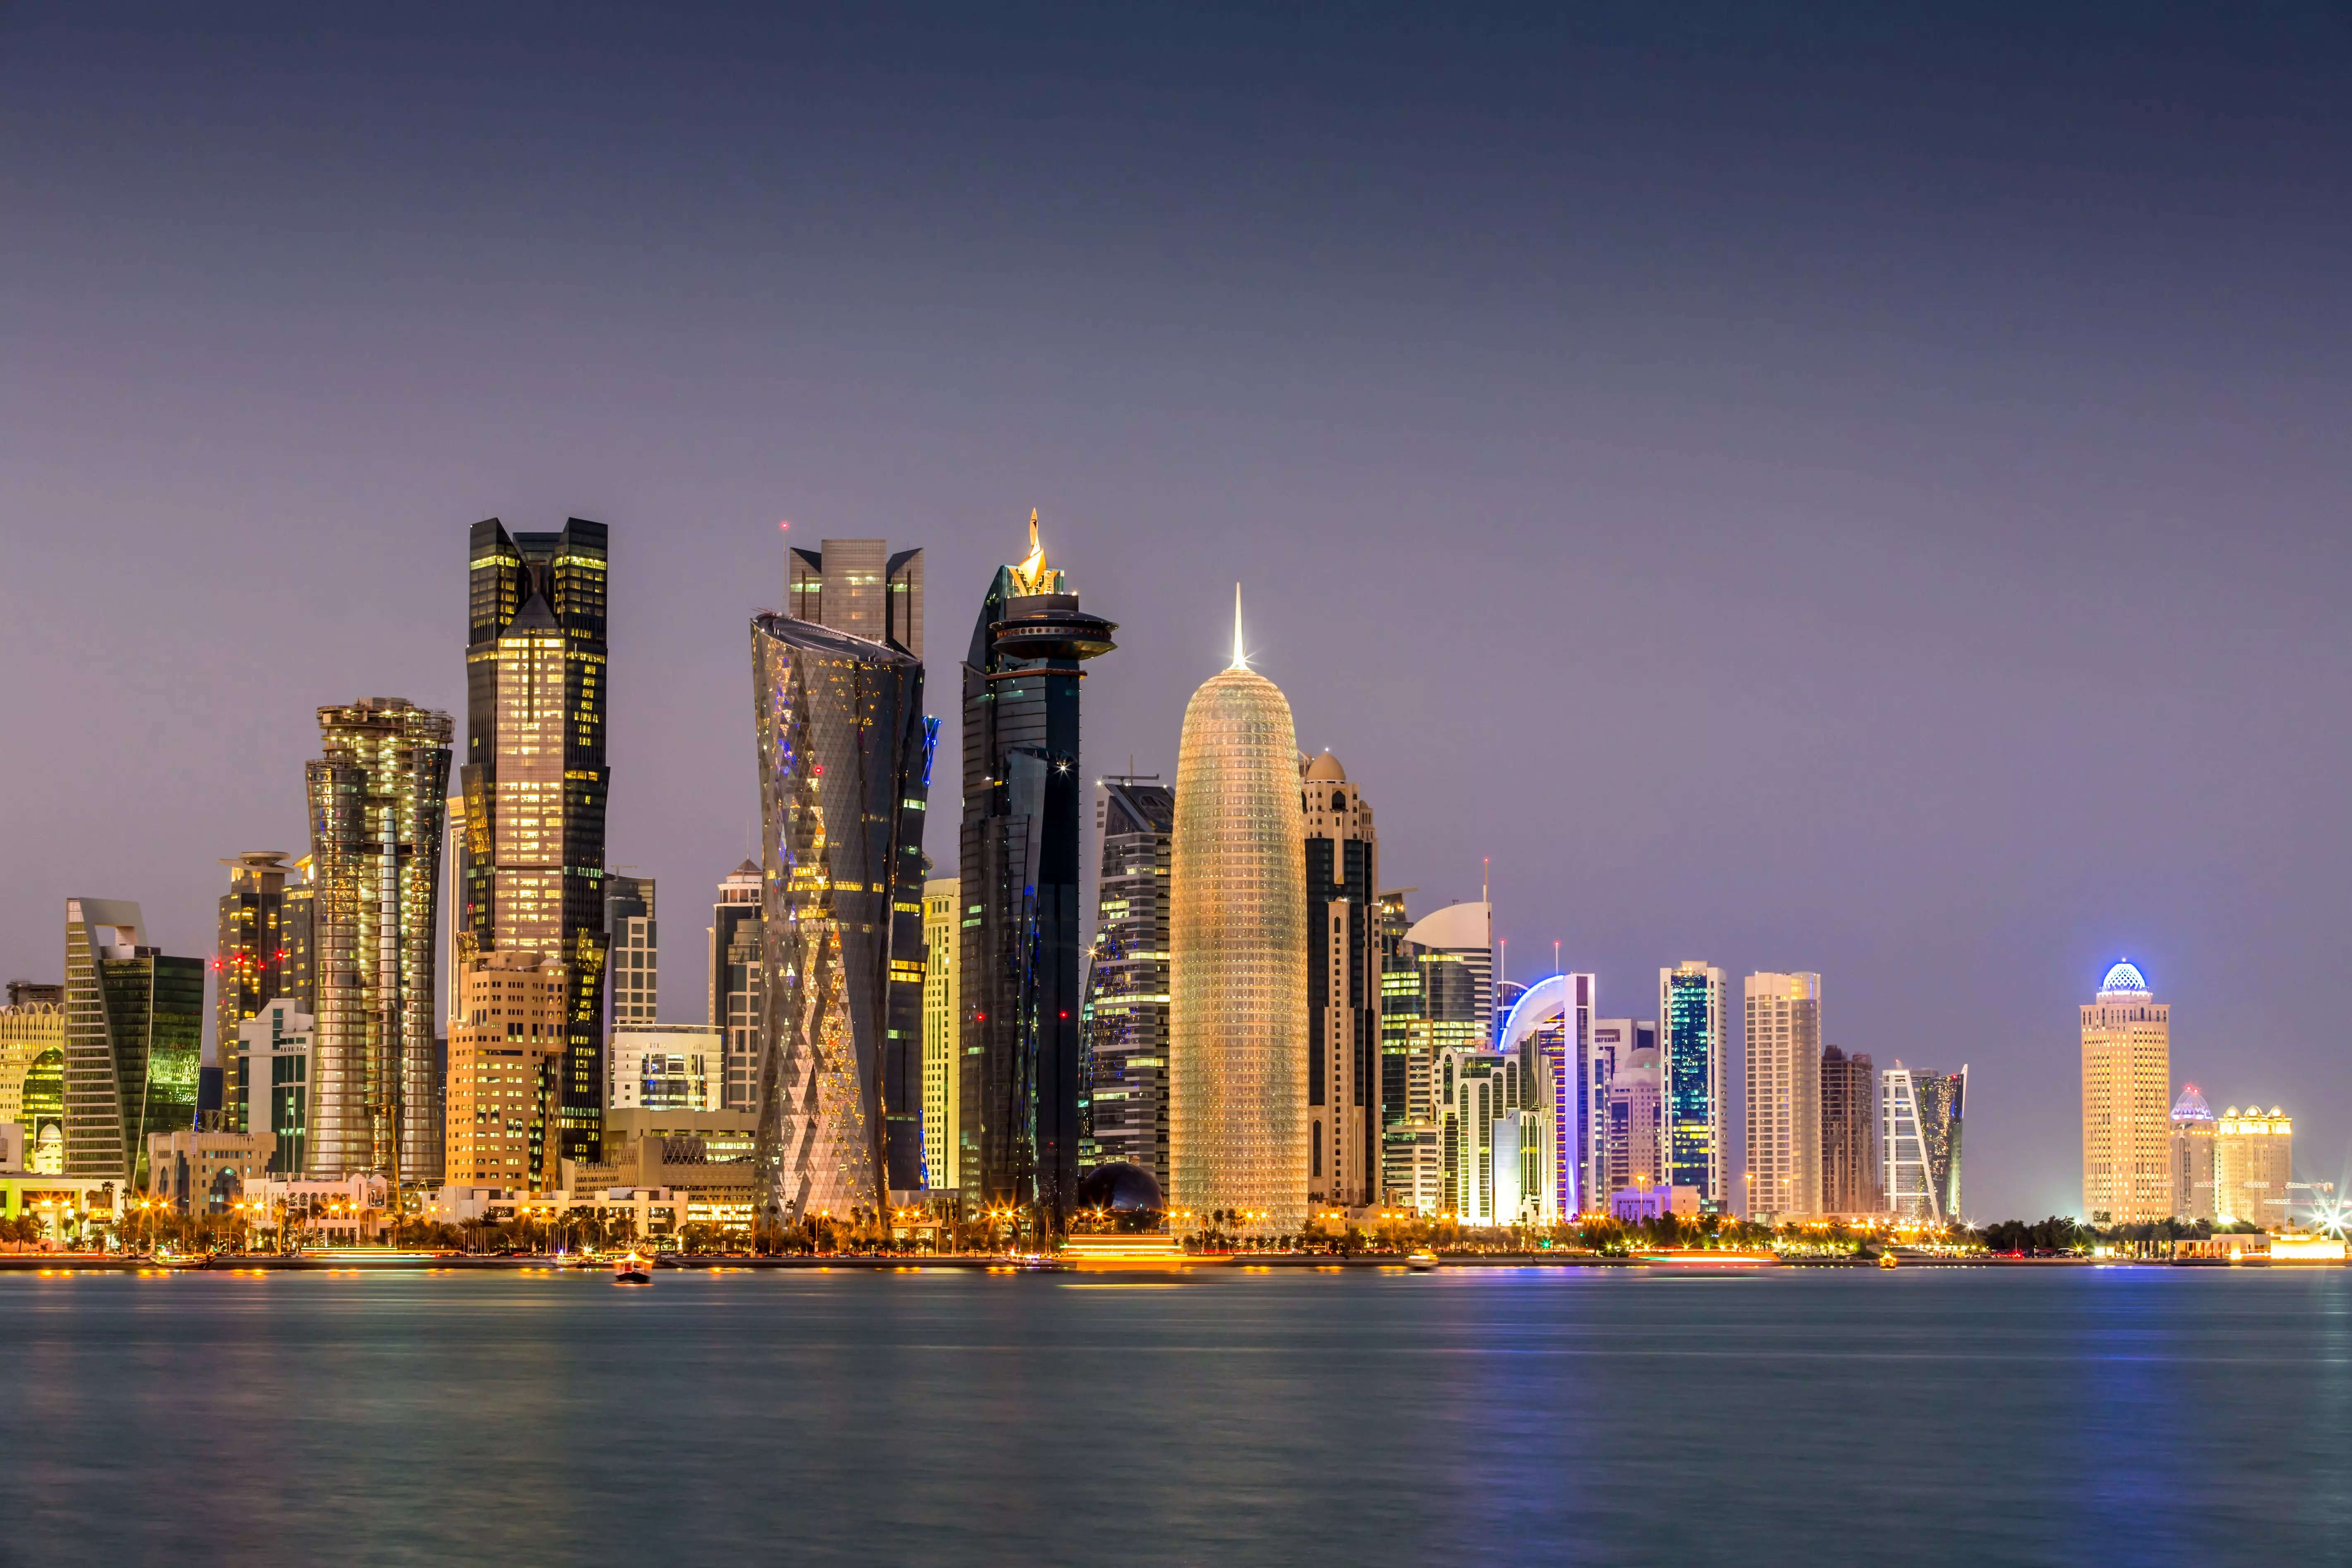 कतर ने यात्रा नीति अपडेट की, हय्या कार्ड की वैधता के साल भर के विस्तार की घोषणा की